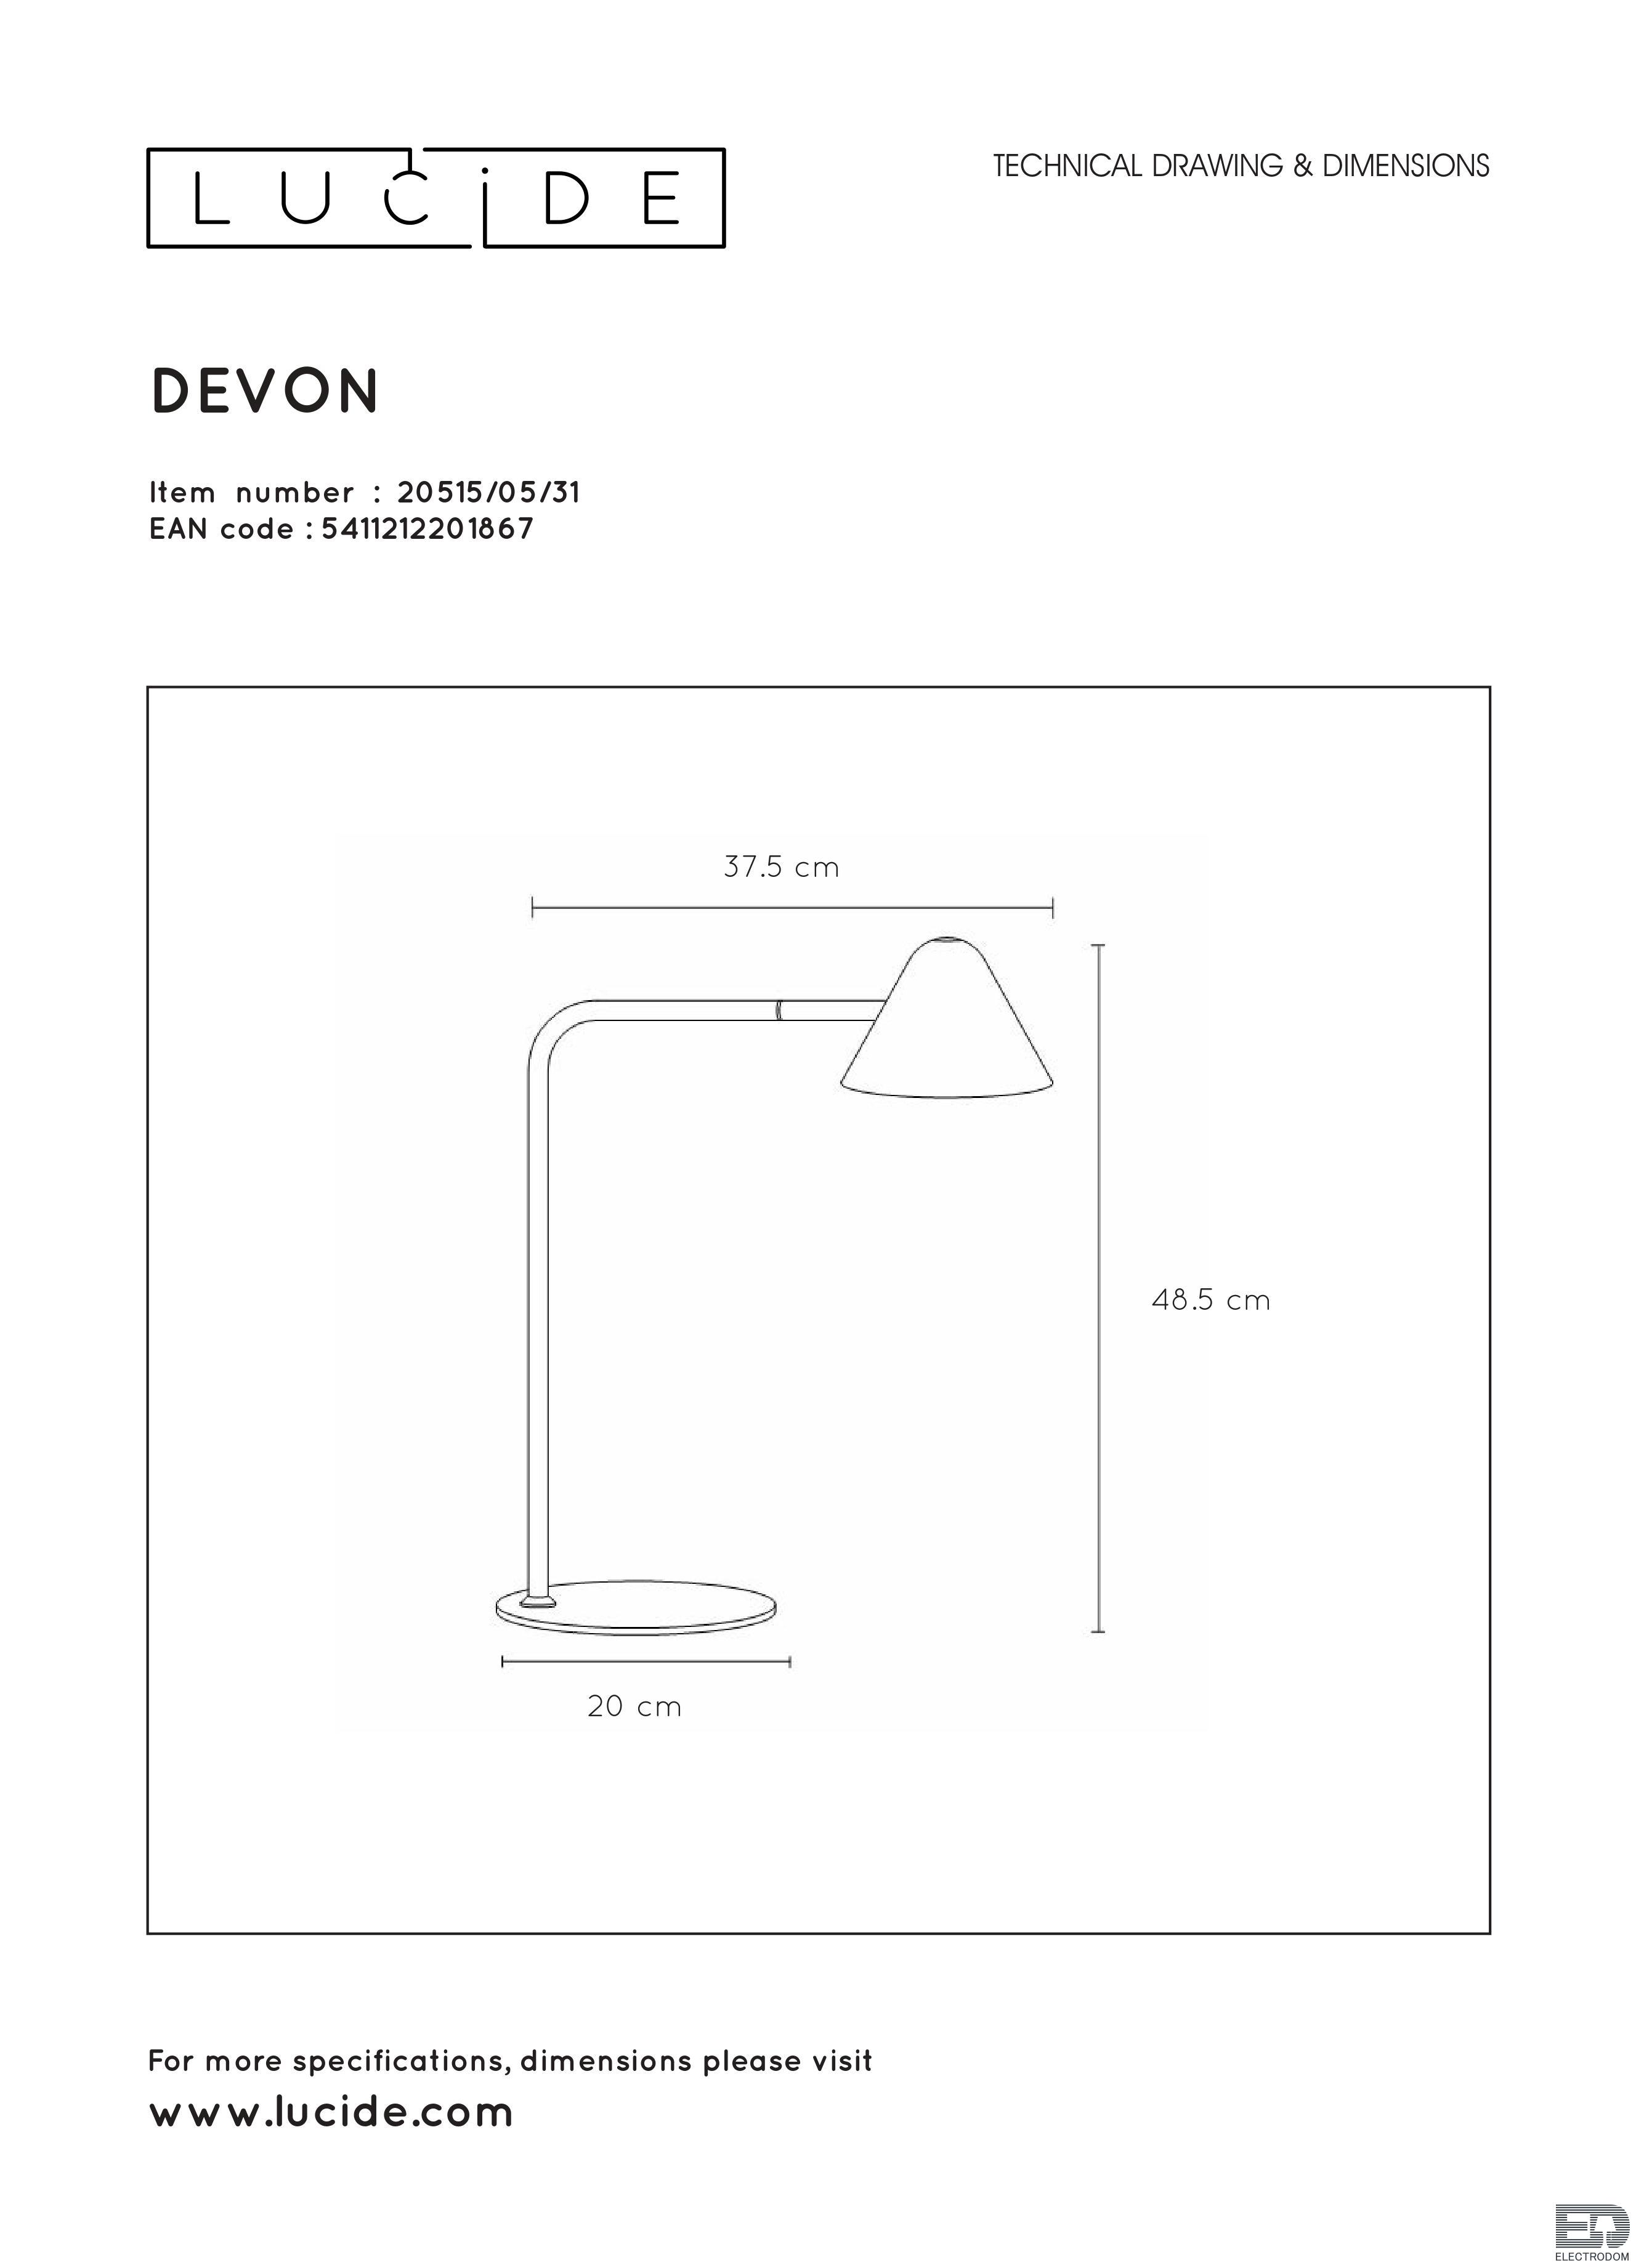 Настольная лампа Lucide Devon 20515/05/31 - цена и фото 6